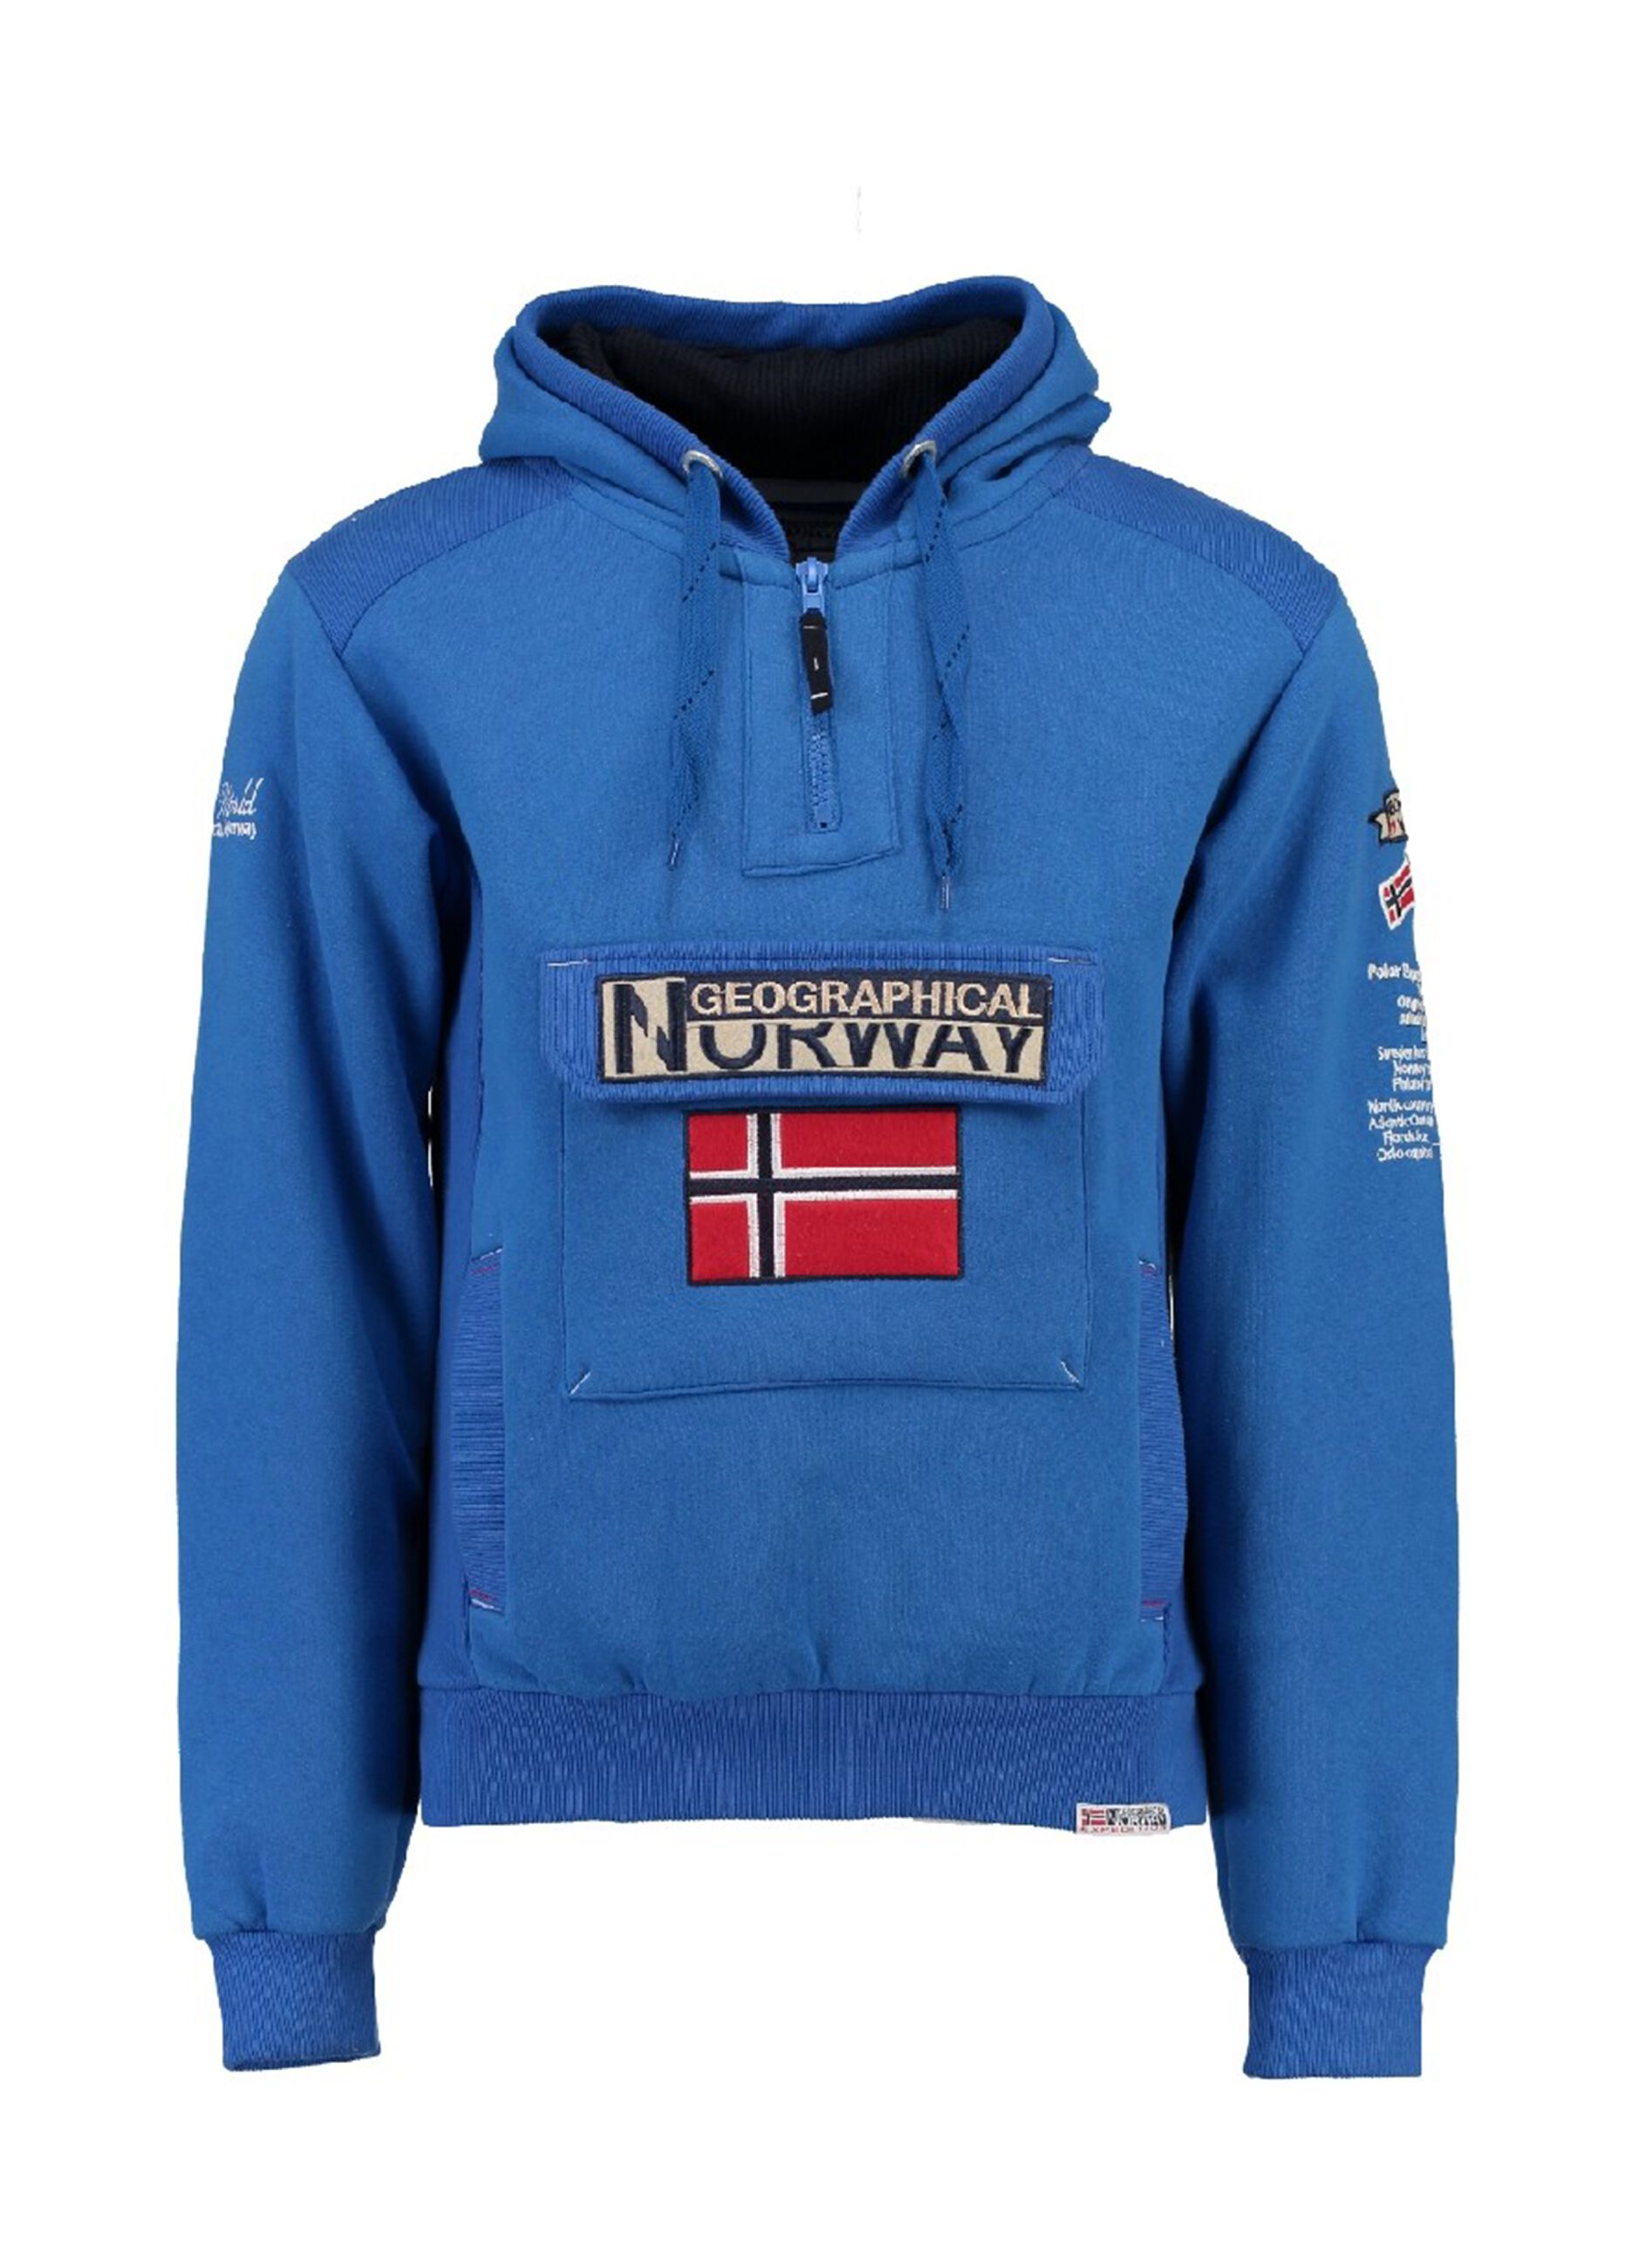 Geographical-Norway - Ropa para hombre y mujer - Parkas, cazadoras,  chaquetas, camisetas, pantalones, bañadores